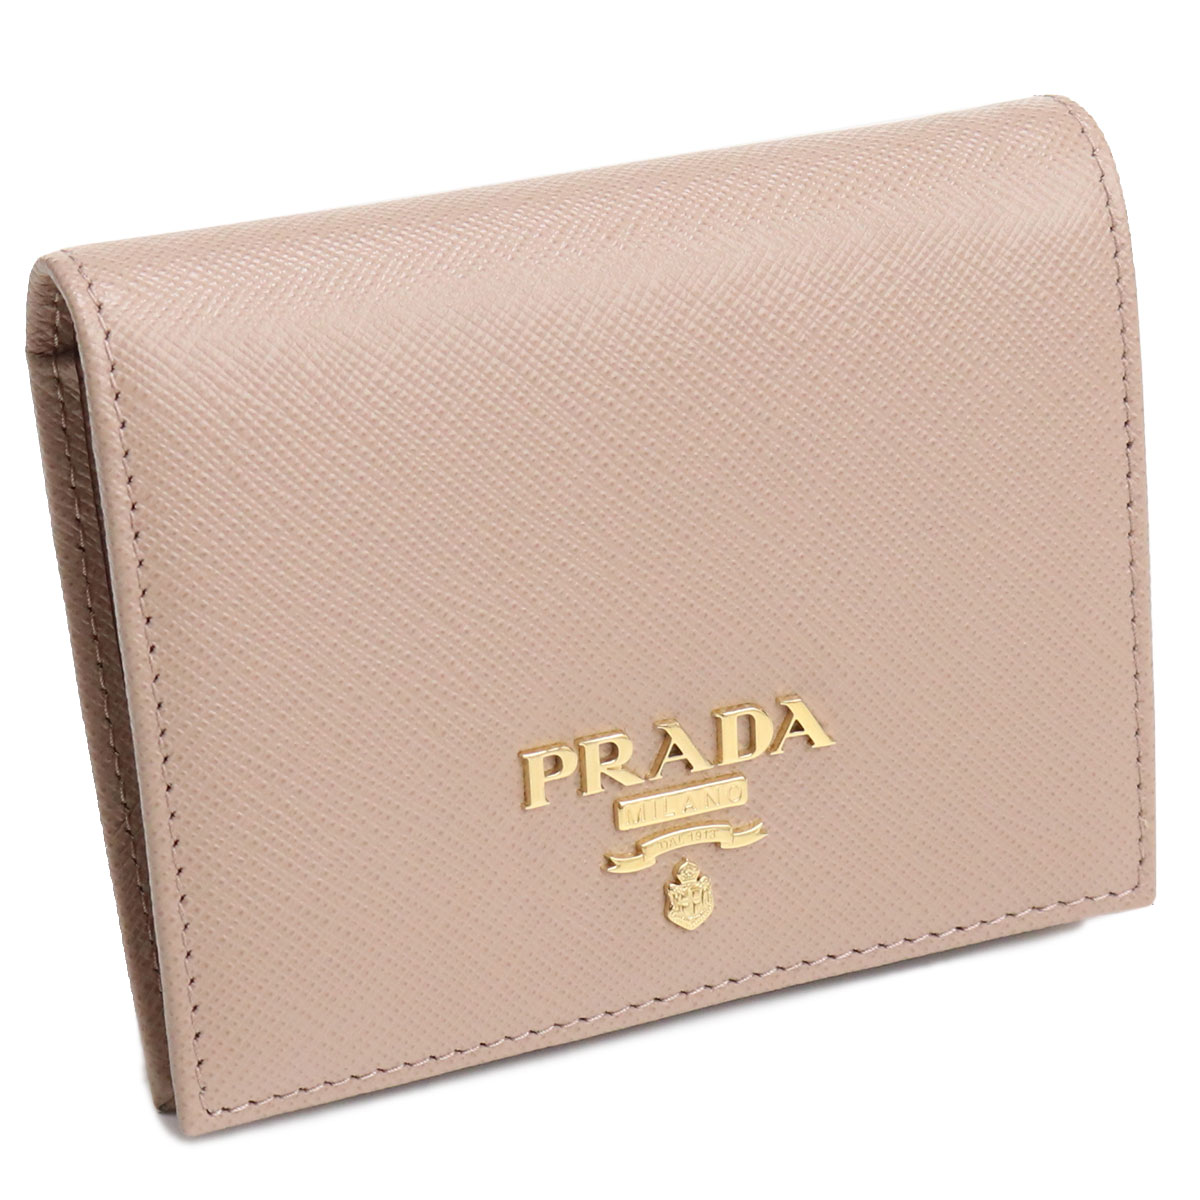 プラダ PRADA  2つ折り財布 ブランド財布 1MV204 QWA F0236 CIPRIA ベージュ系 gsw-2 mini-01